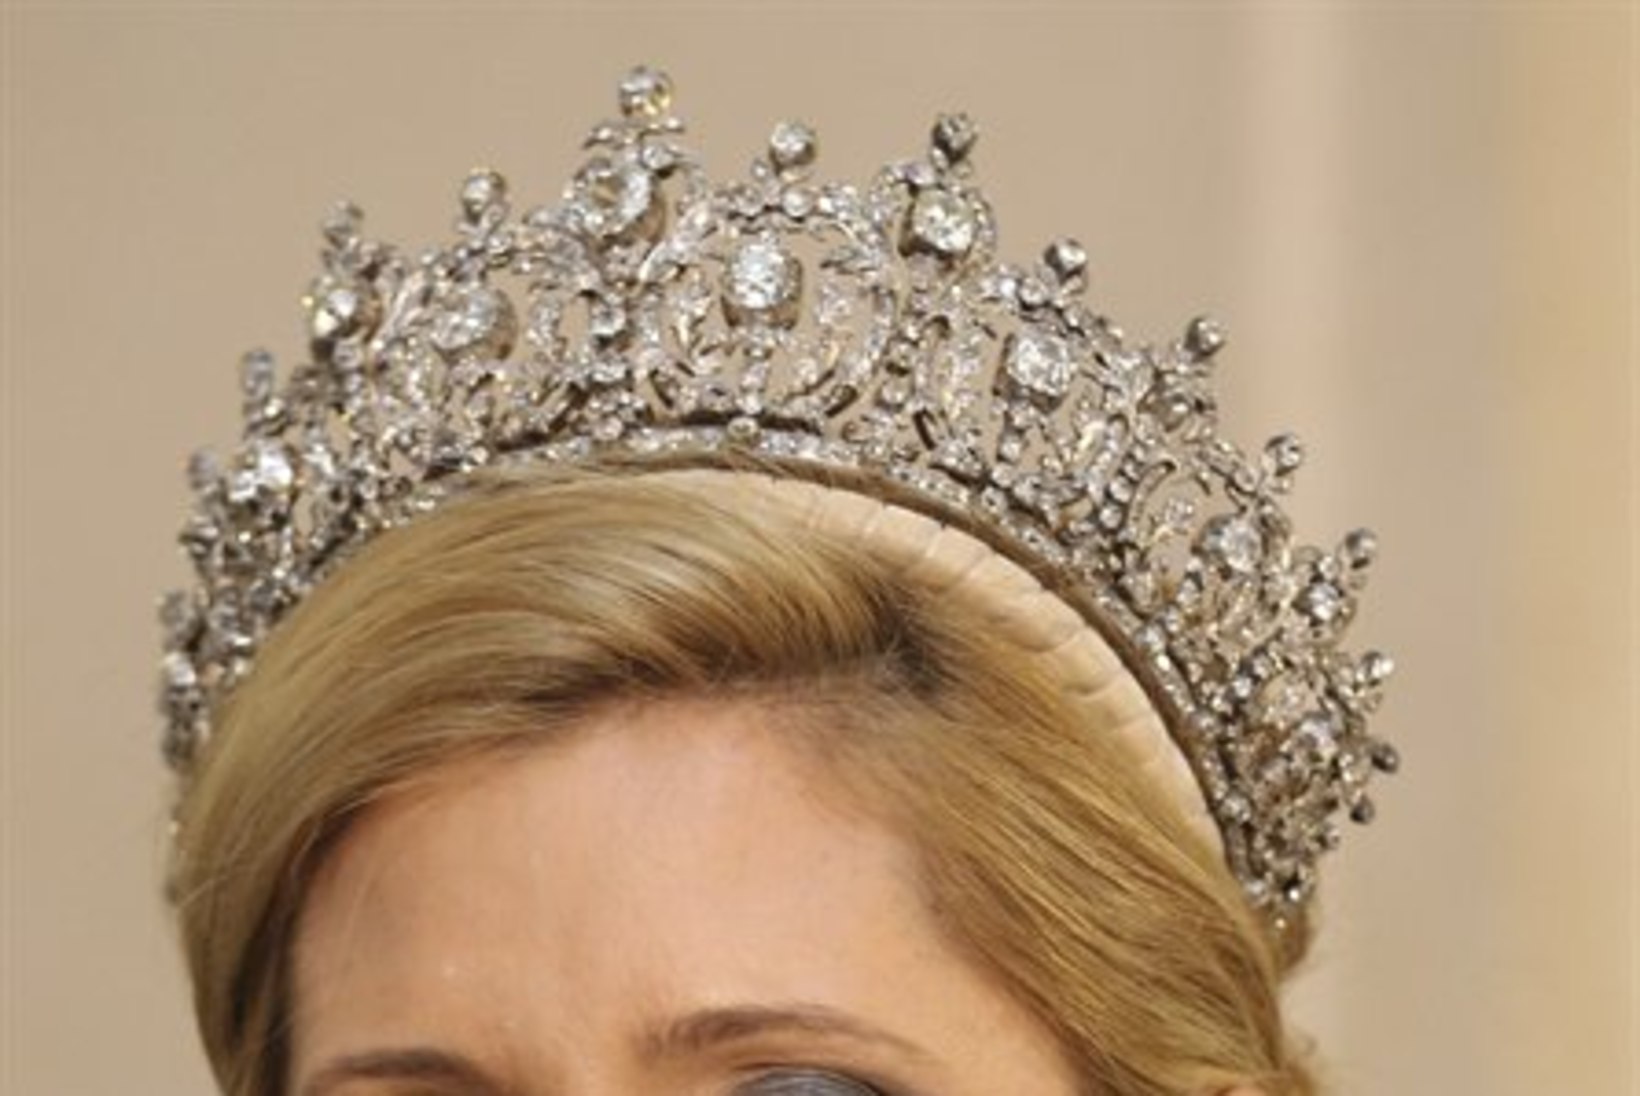 Taani kuninganna peol särasid kroonitud pead